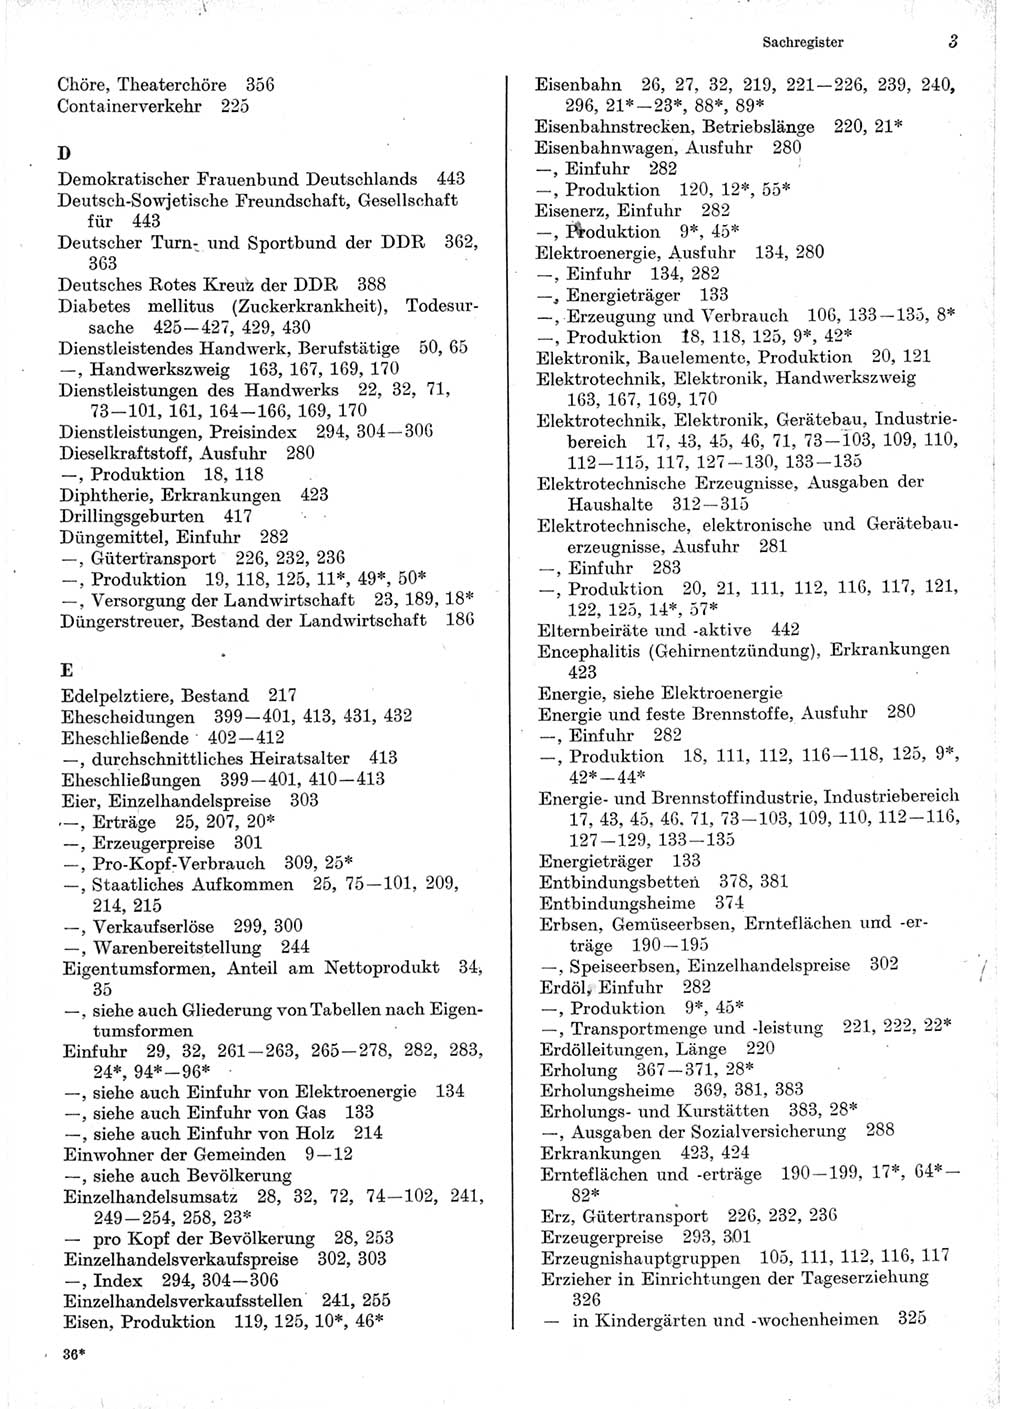 Statistisches Jahrbuch der Deutschen Demokratischen Republik (DDR) 1975, Seite 3 (Stat. Jb. DDR 1975, S. 3)